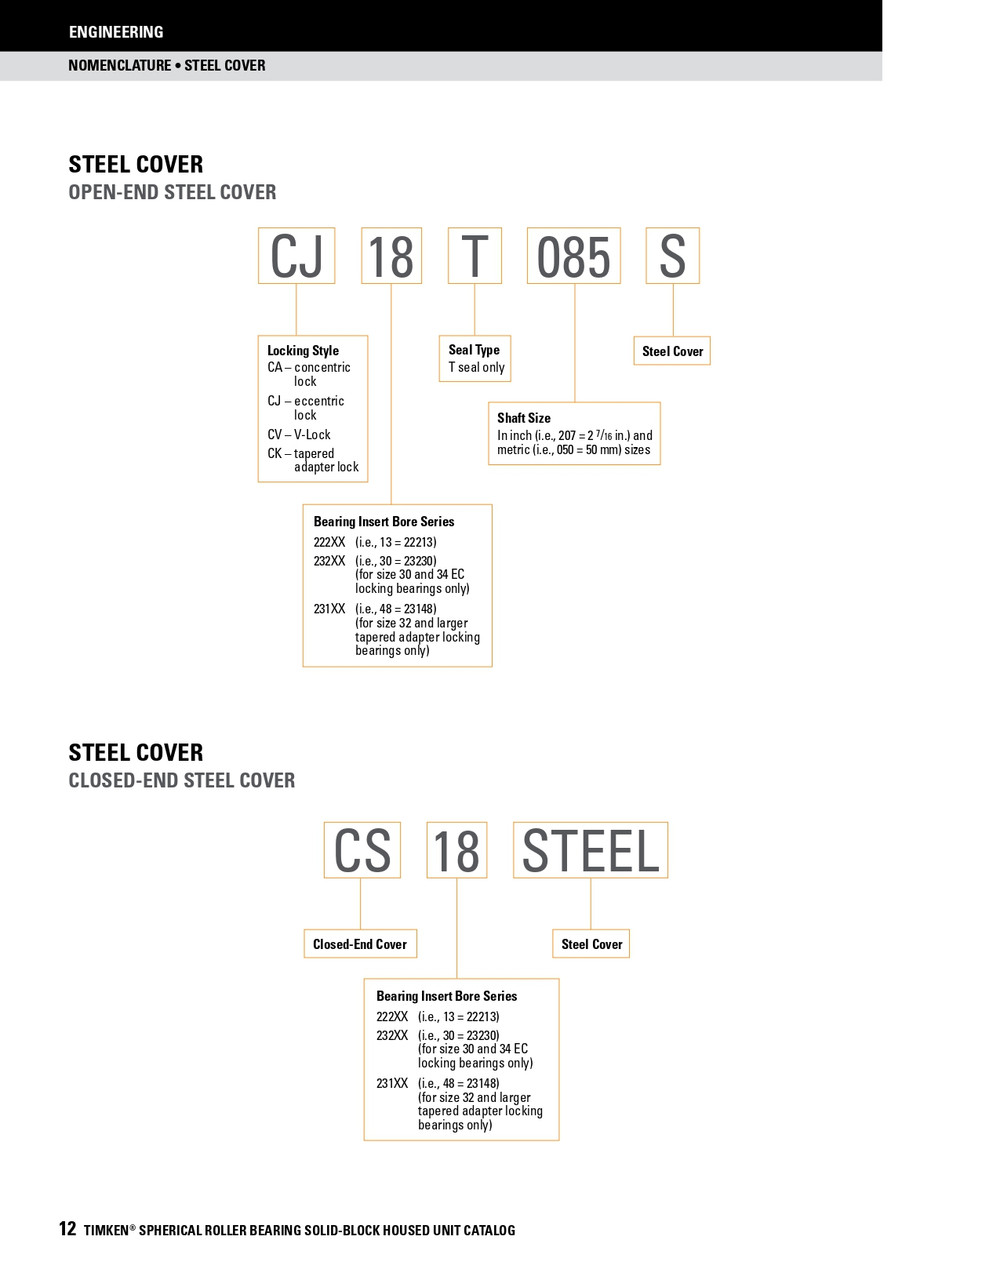 4" Timken SRB Steel Open End Cover w/Teflon Seal - TA/DV Taper Lock Bushing Type  CK22T400S